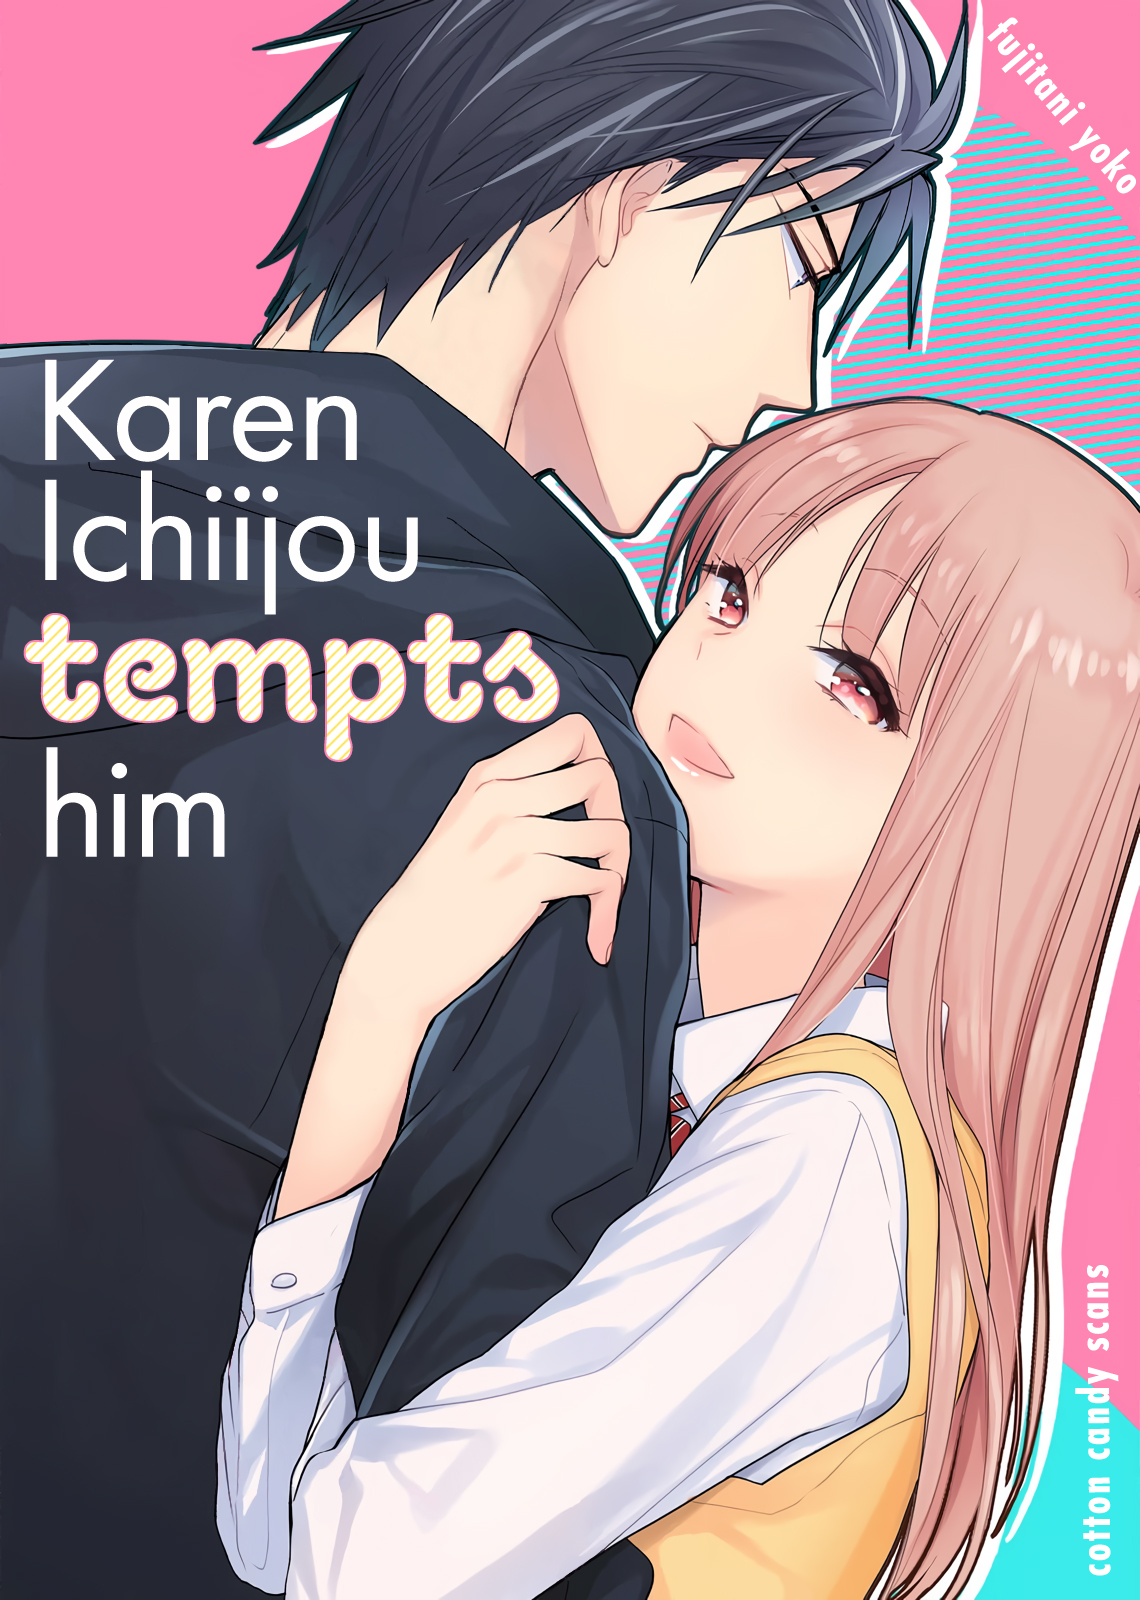 Karen Ichijou Tempts Him thumbnail